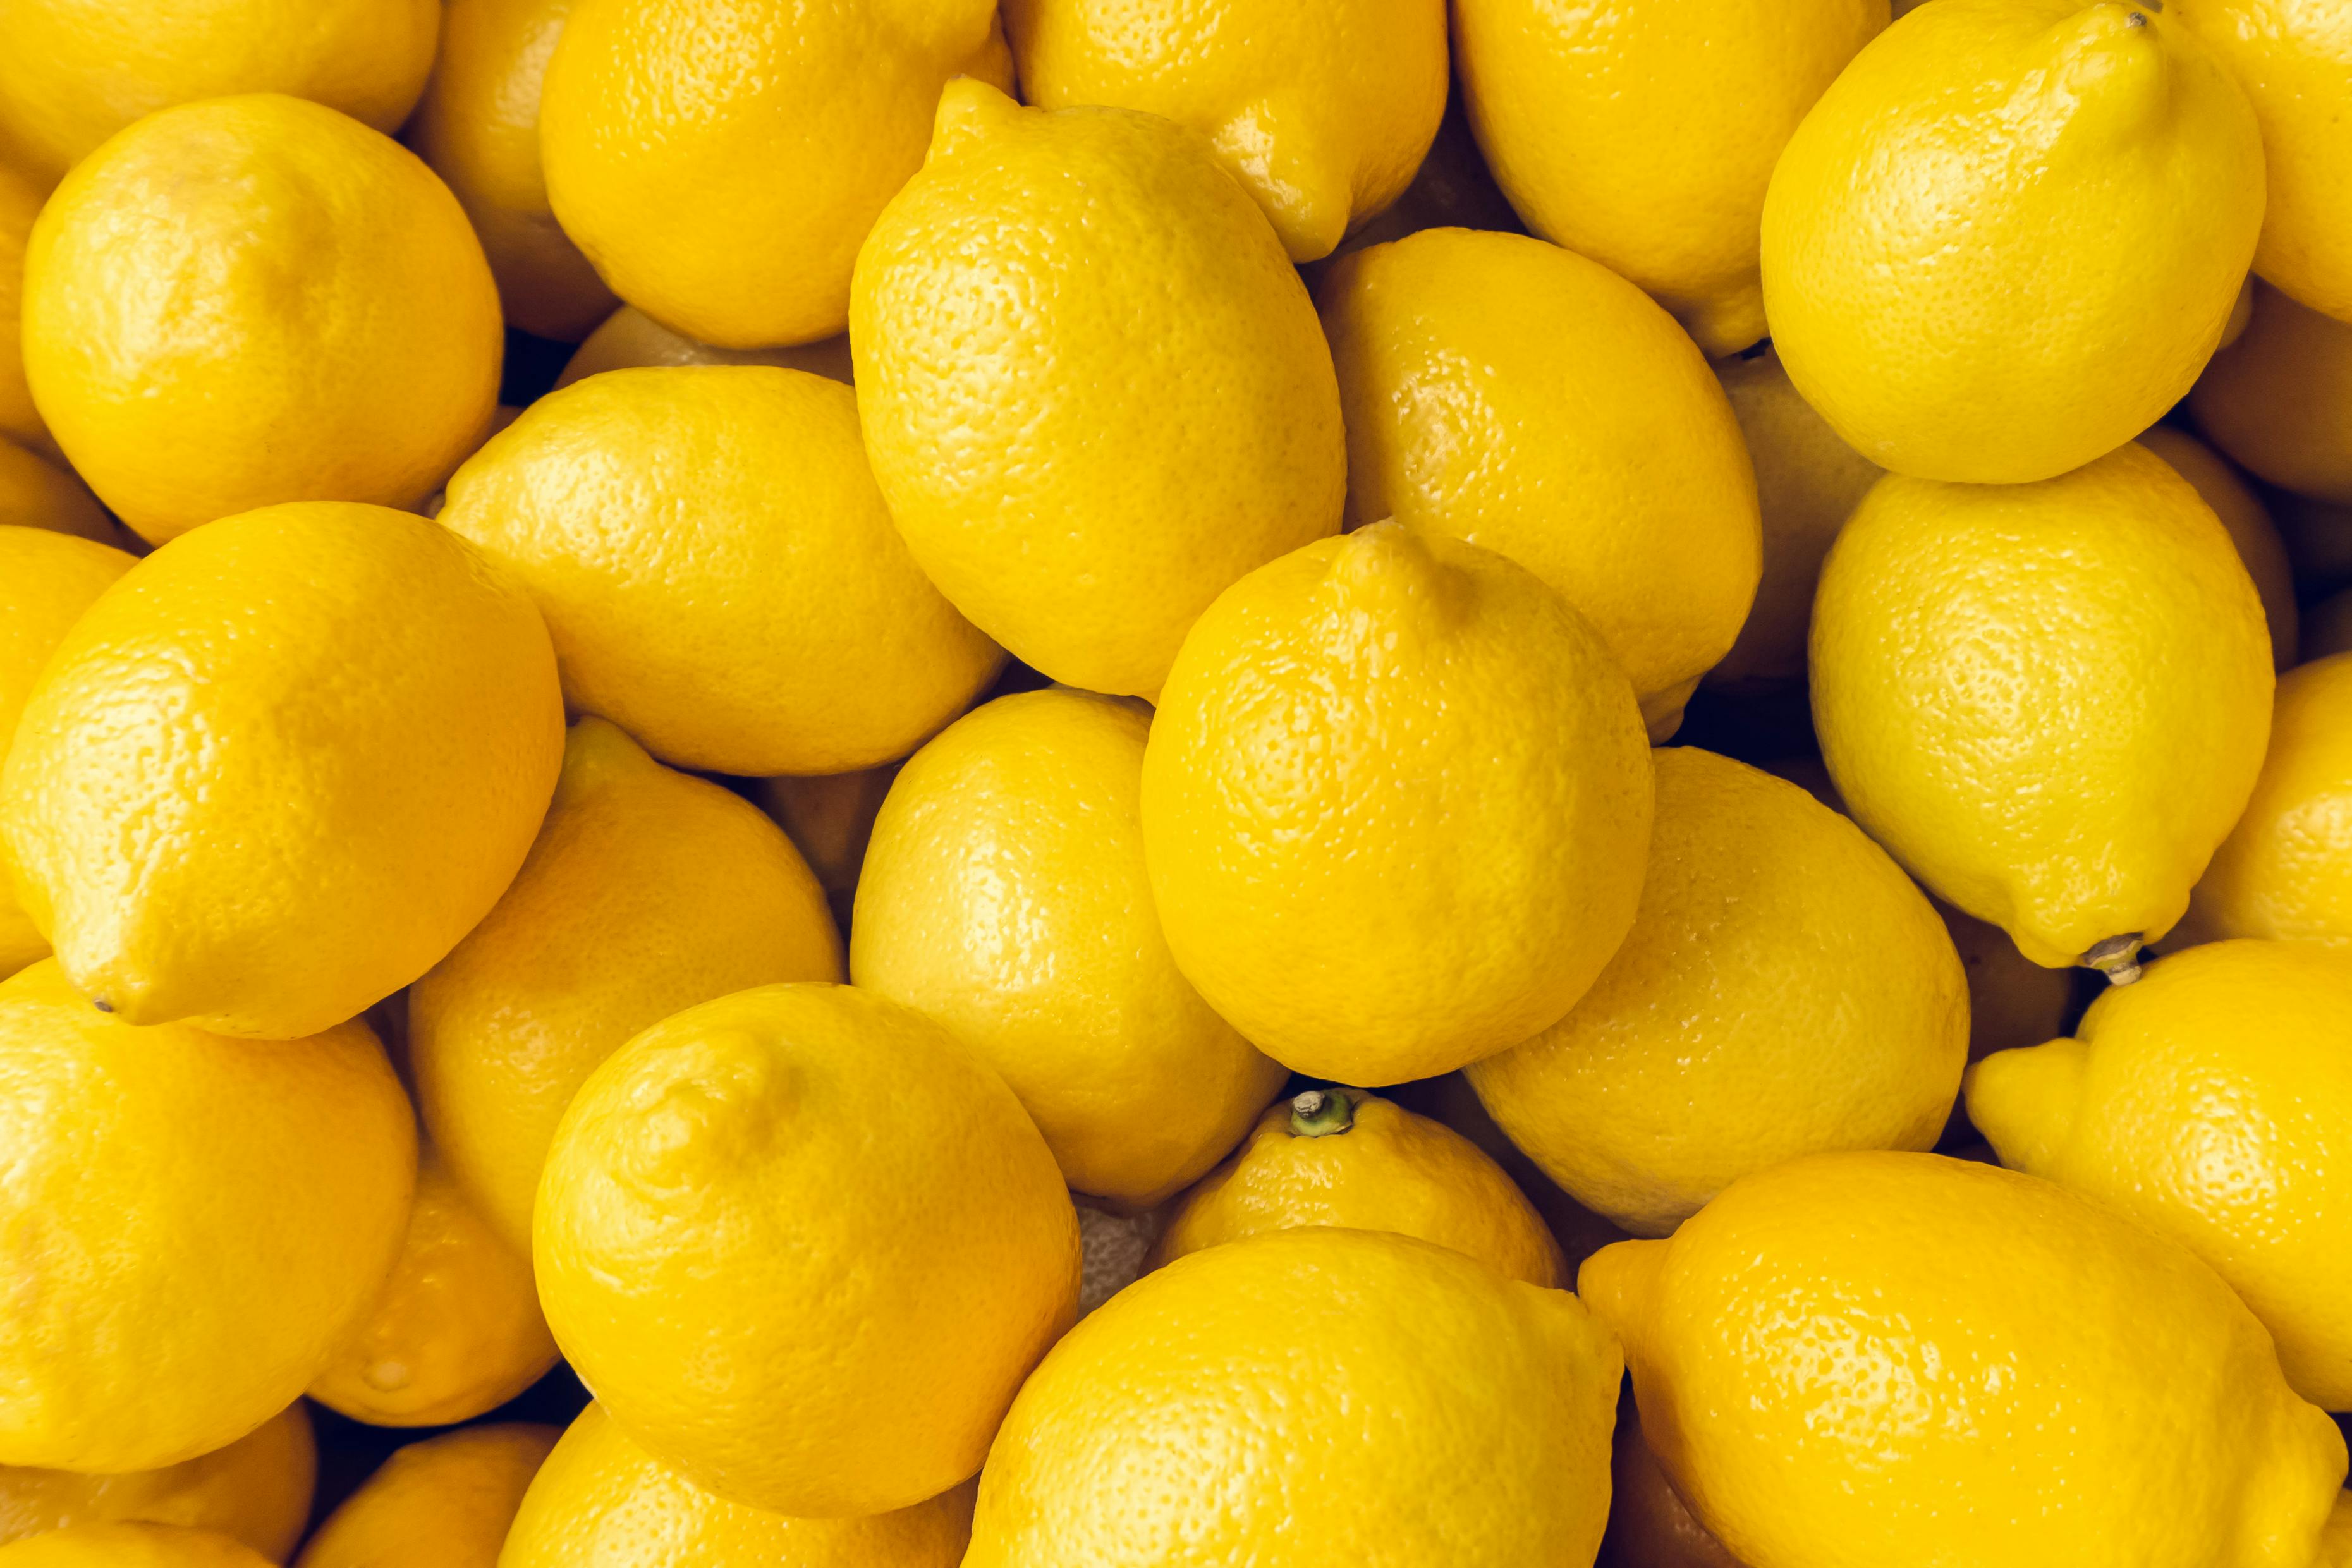 Lemons in a pile